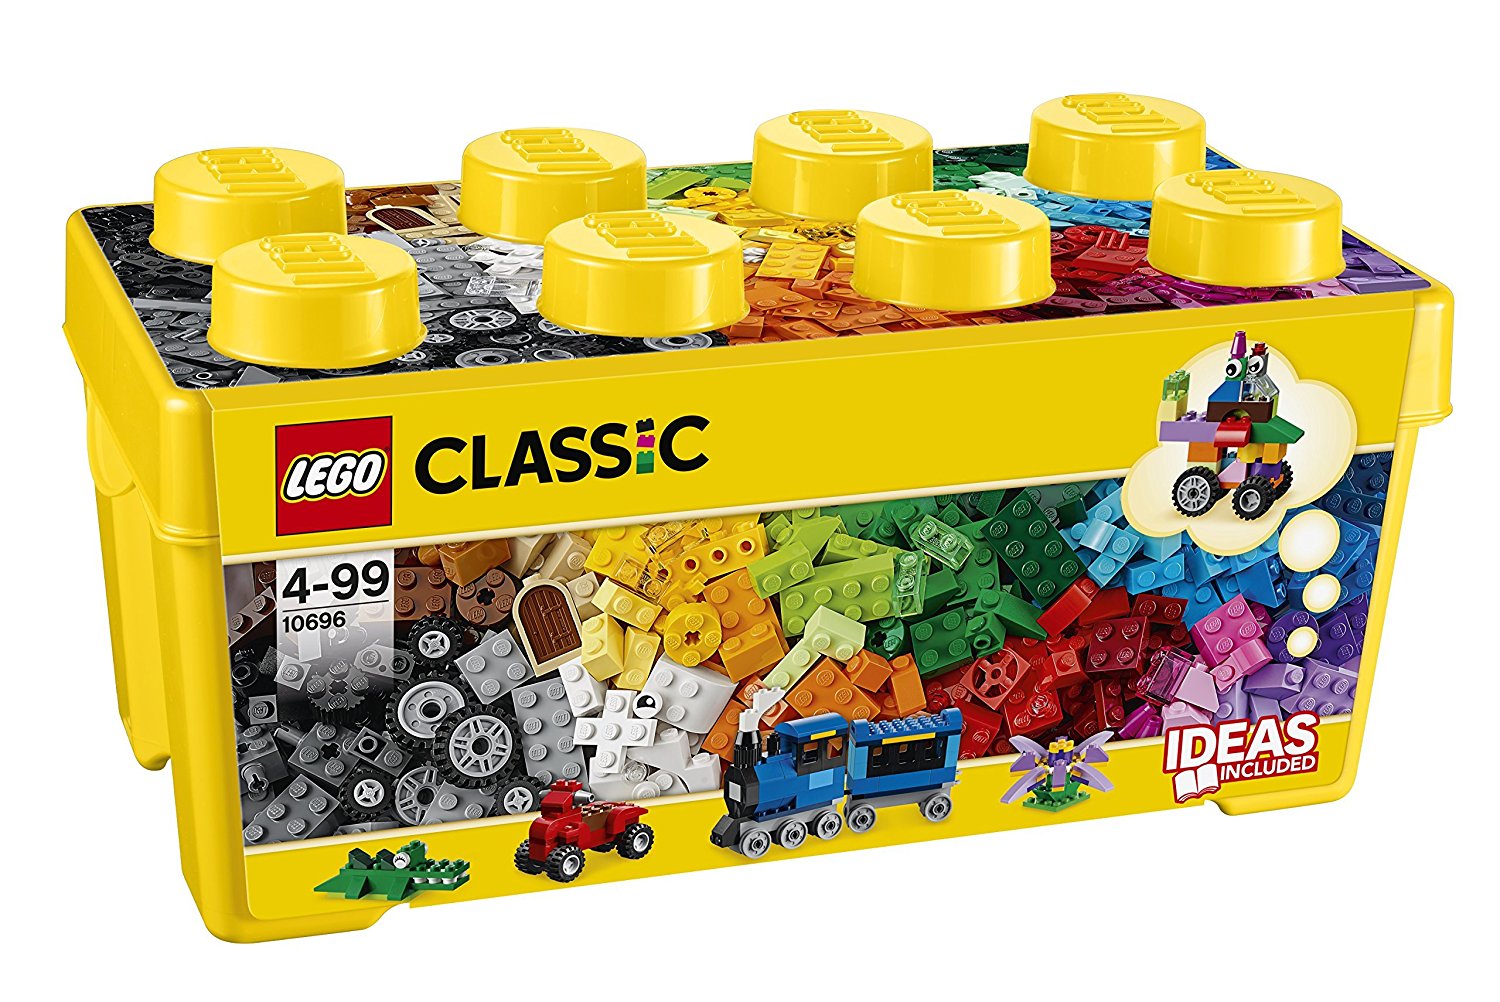 レゴ (LEGO)クラシック 10696 公式レシピ 説明書 作品例と作り方 ダウンロード方法